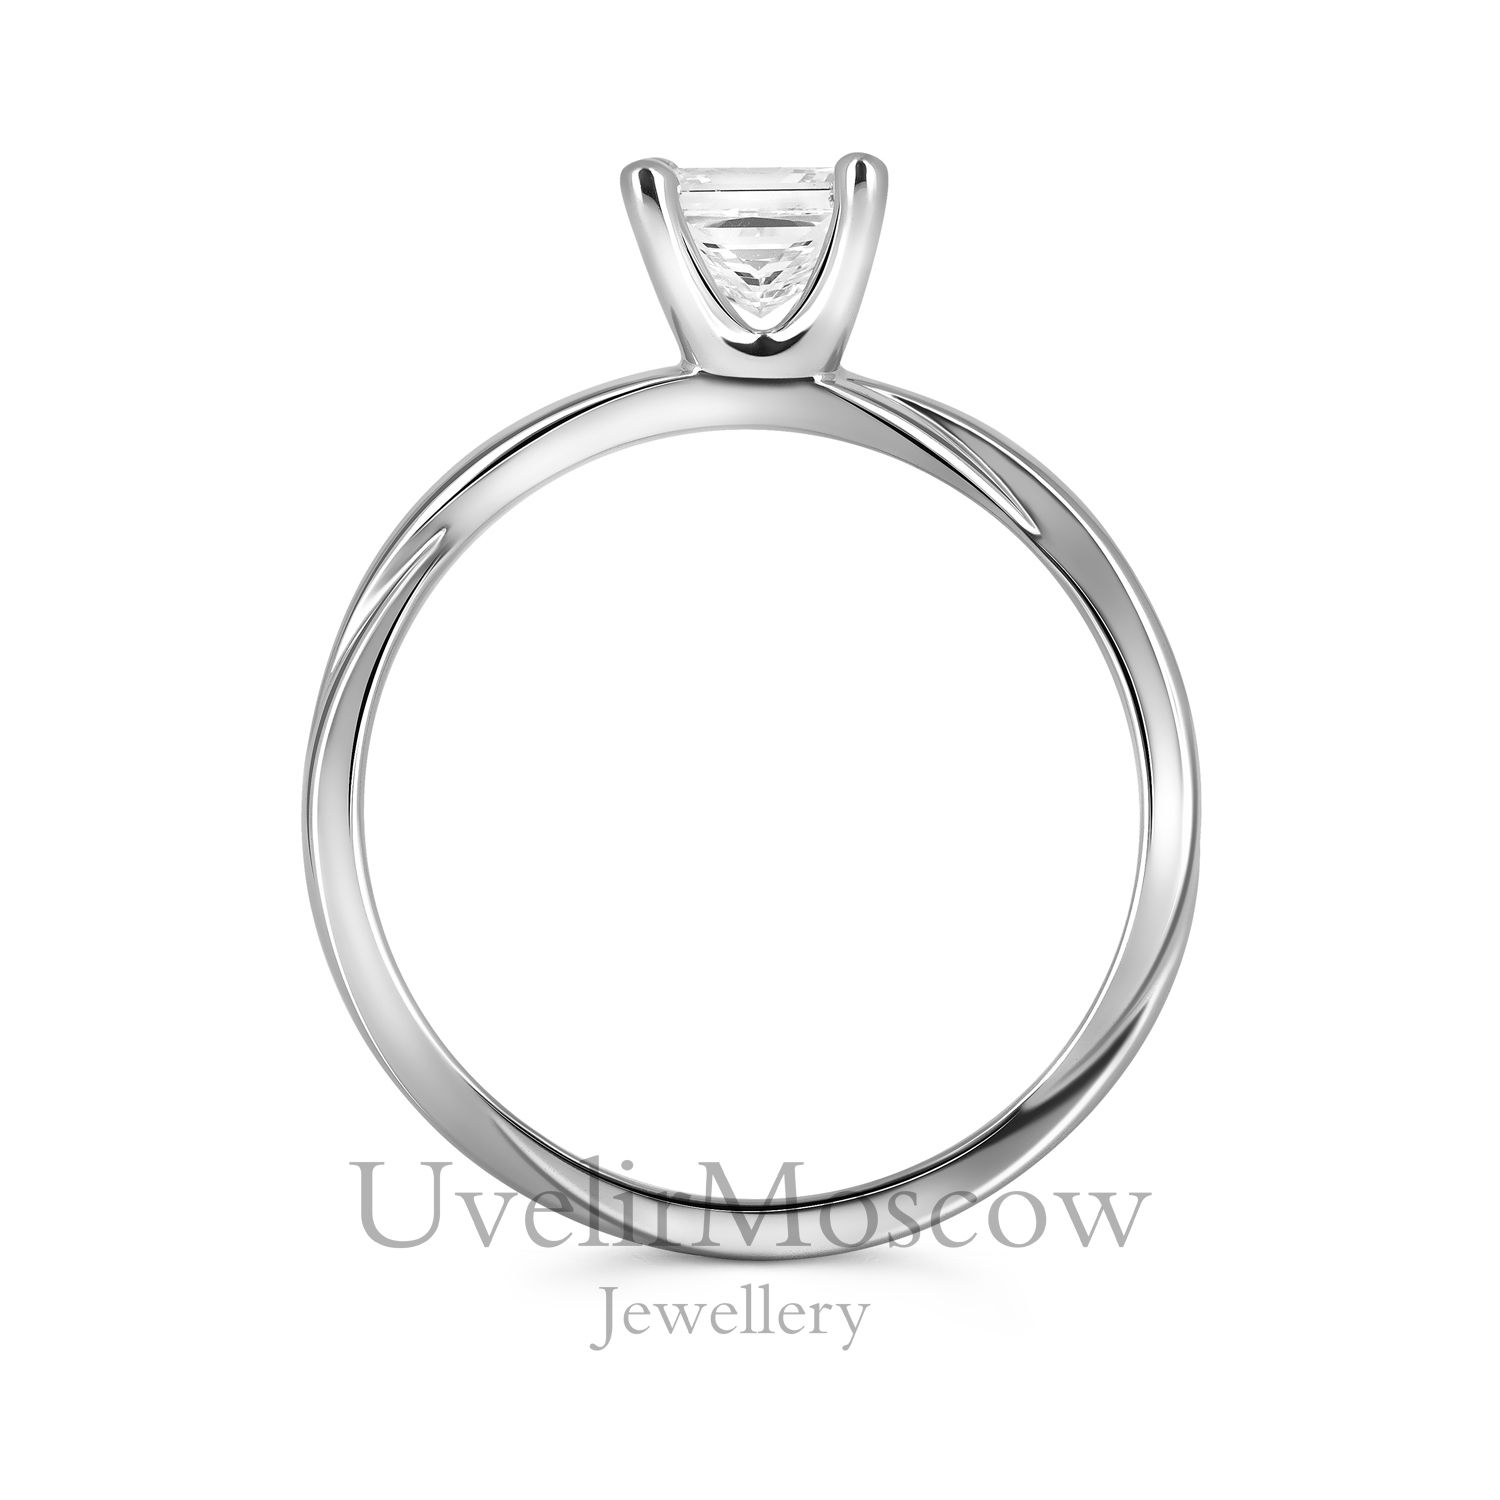 Оригинальное кольцо для помолвки с бриллиантом «Принцесса»